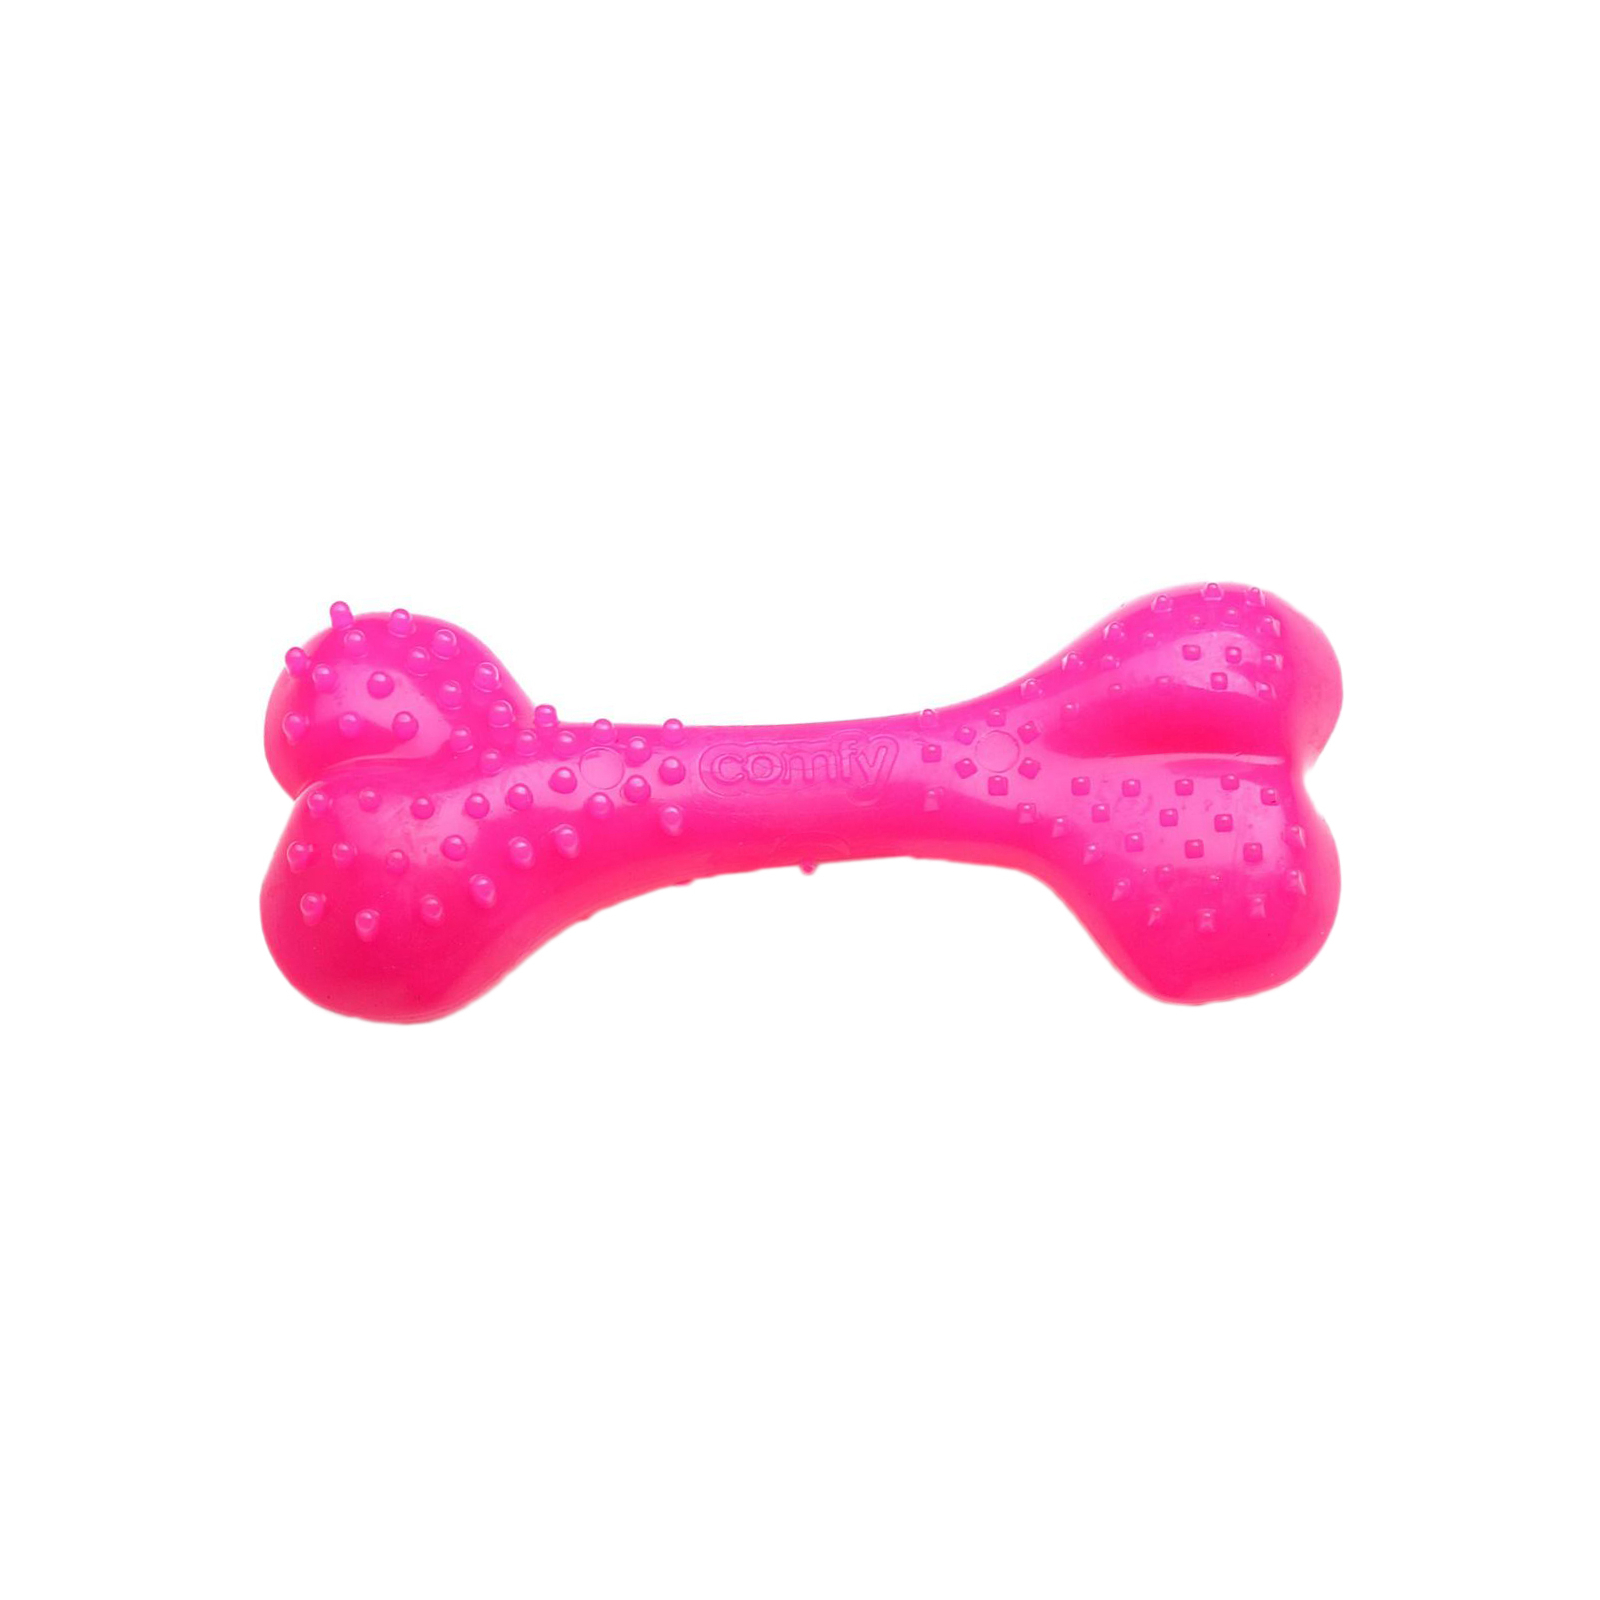 Іграшка для собак Comfy Mint Dental Bone кістка 8.5 см рожева (5905546192910)